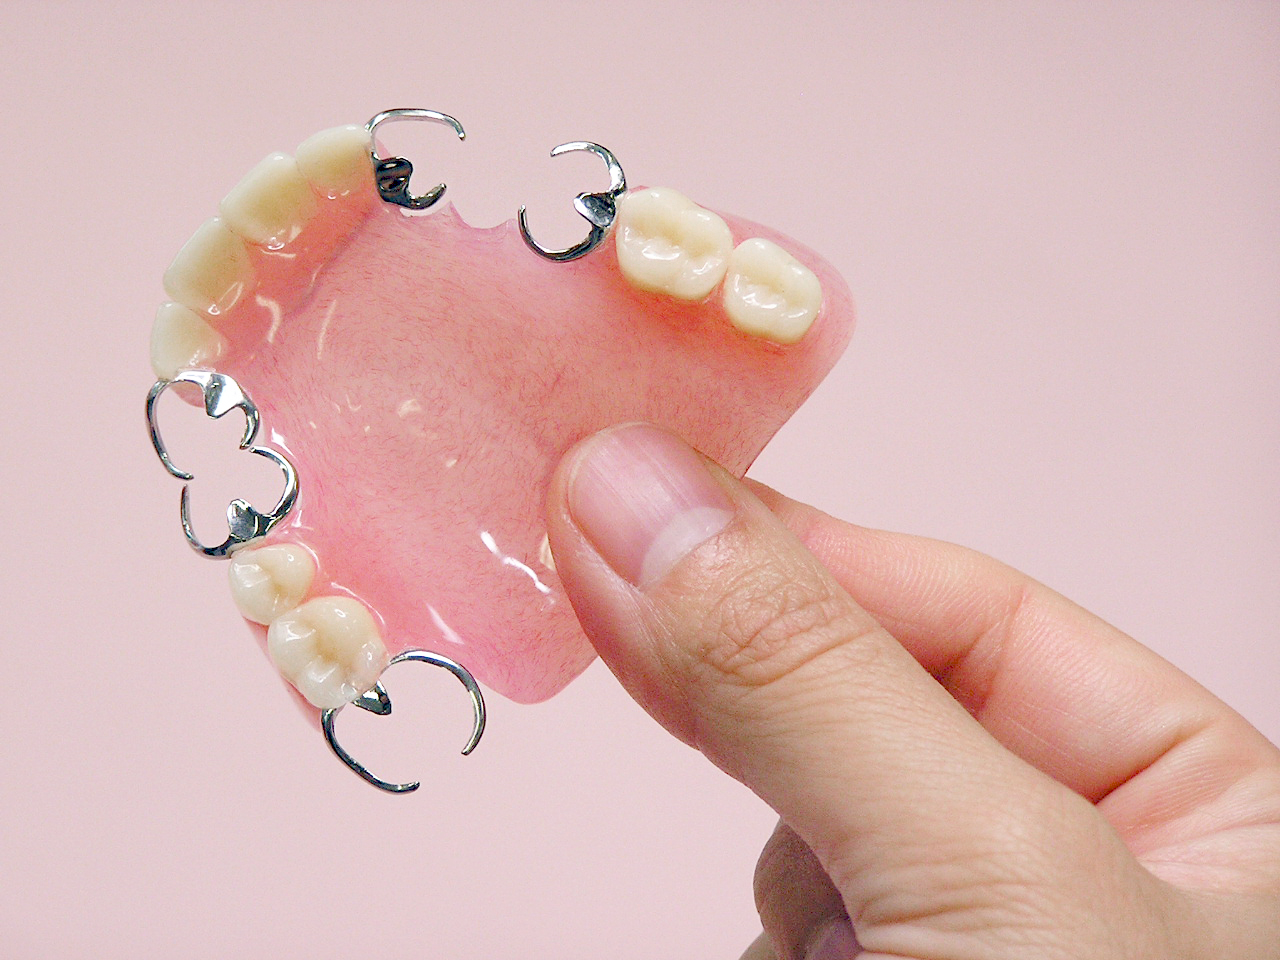 入れ歯安定剤をきれいに取り除く方法